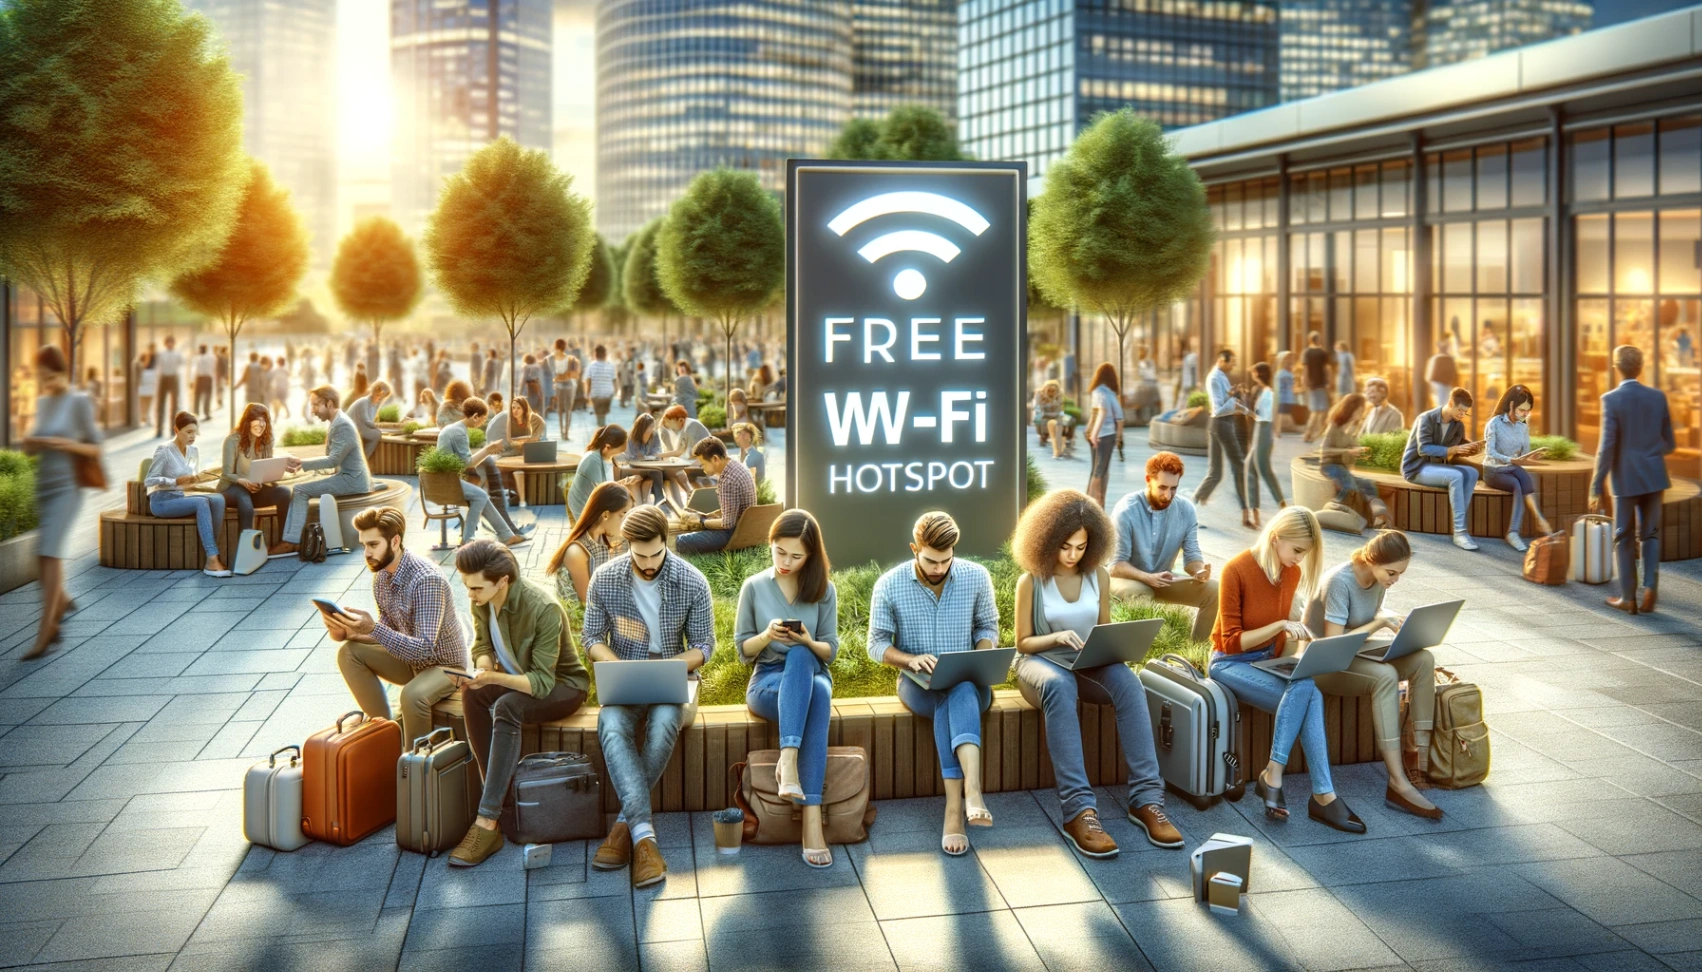 Panduan Langkah demi Langkah untuk Mencari Hotspot WiFi Percuma